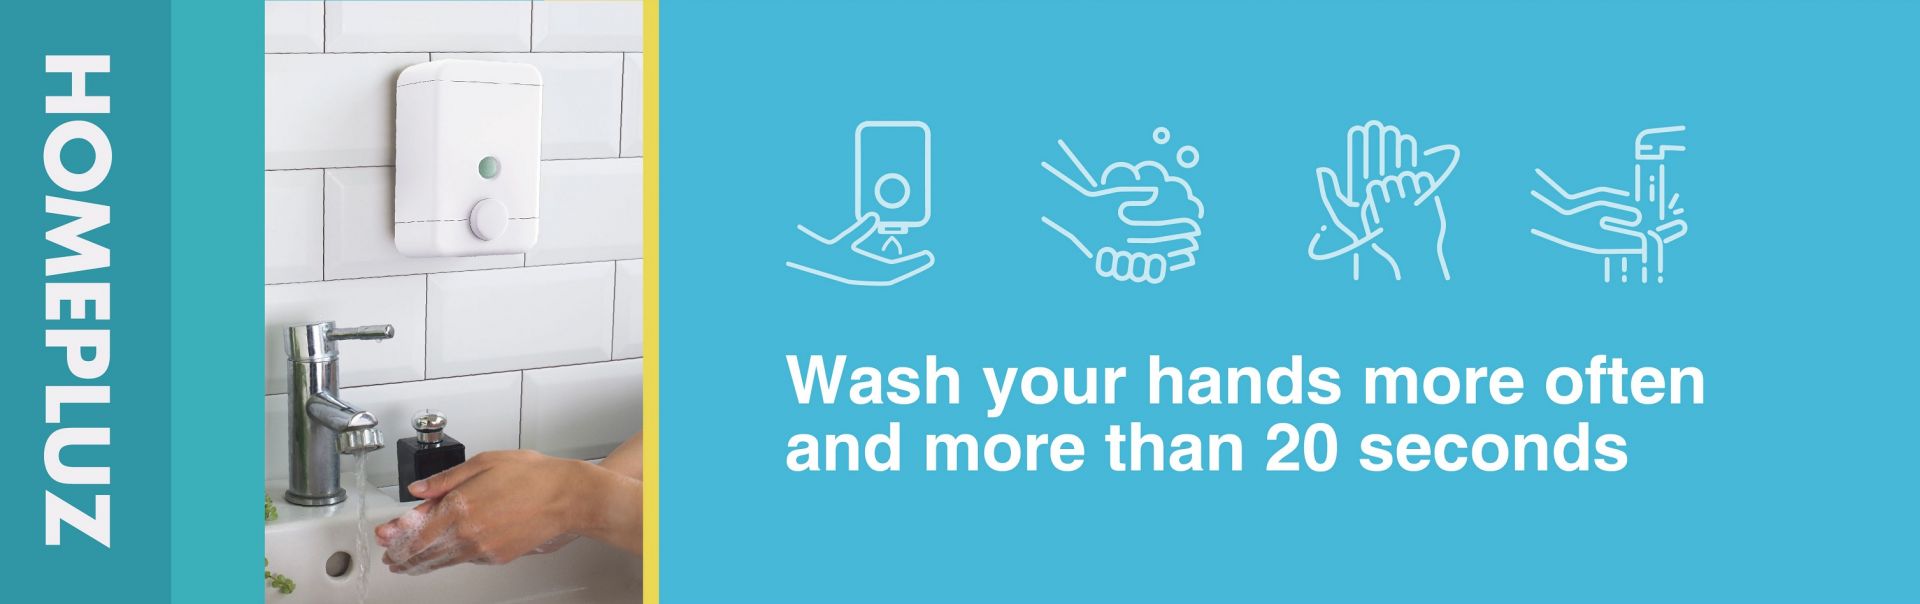 Lavarse las manos para mantenerse alejado de los virus